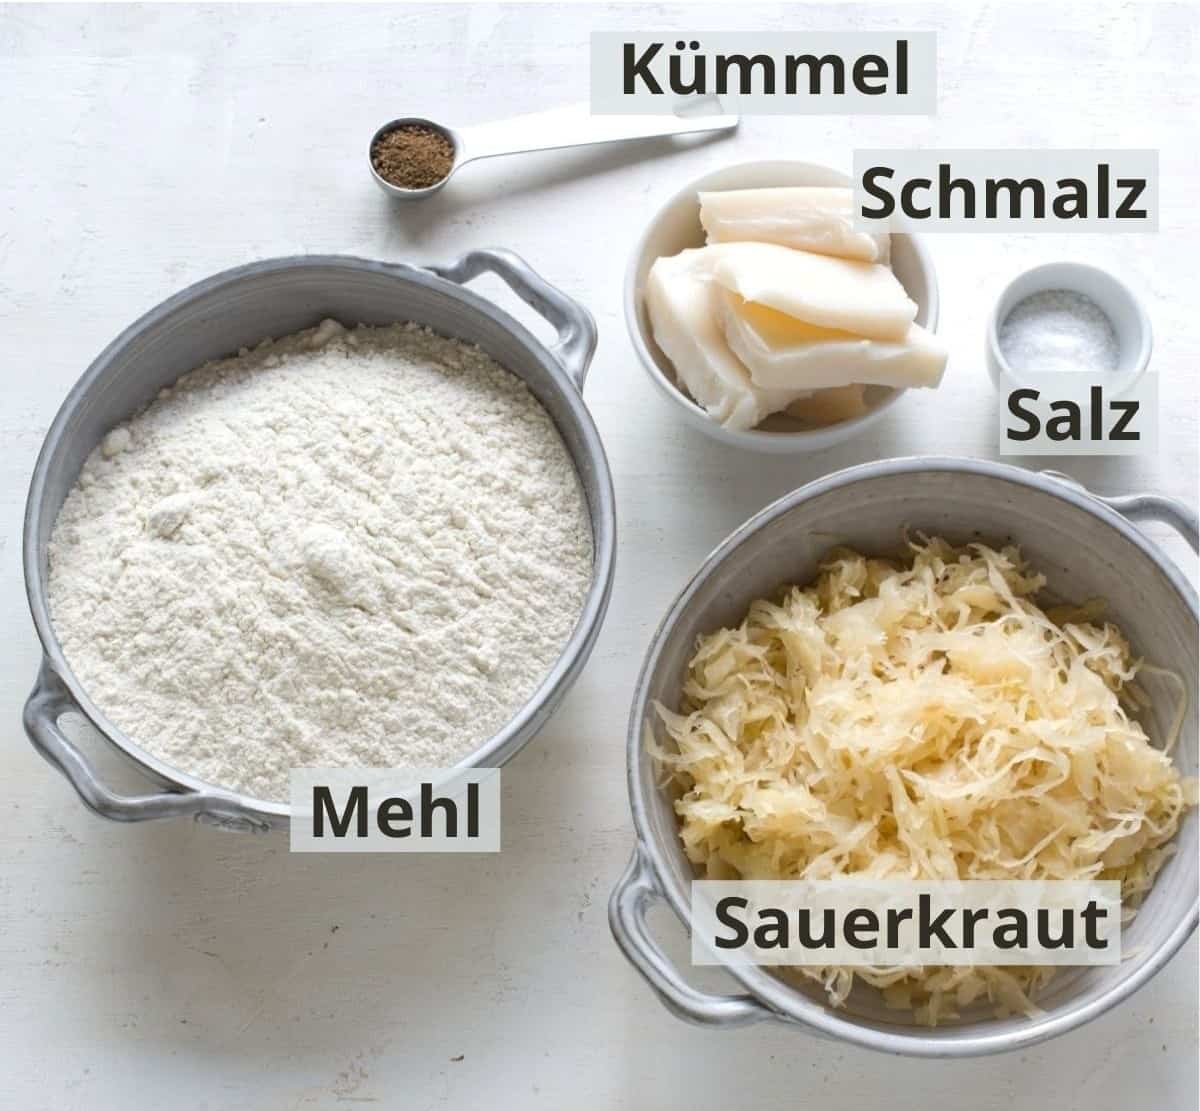 Zutaten für Plätzchen mit Sauerkraut, mit Beschriftung. 